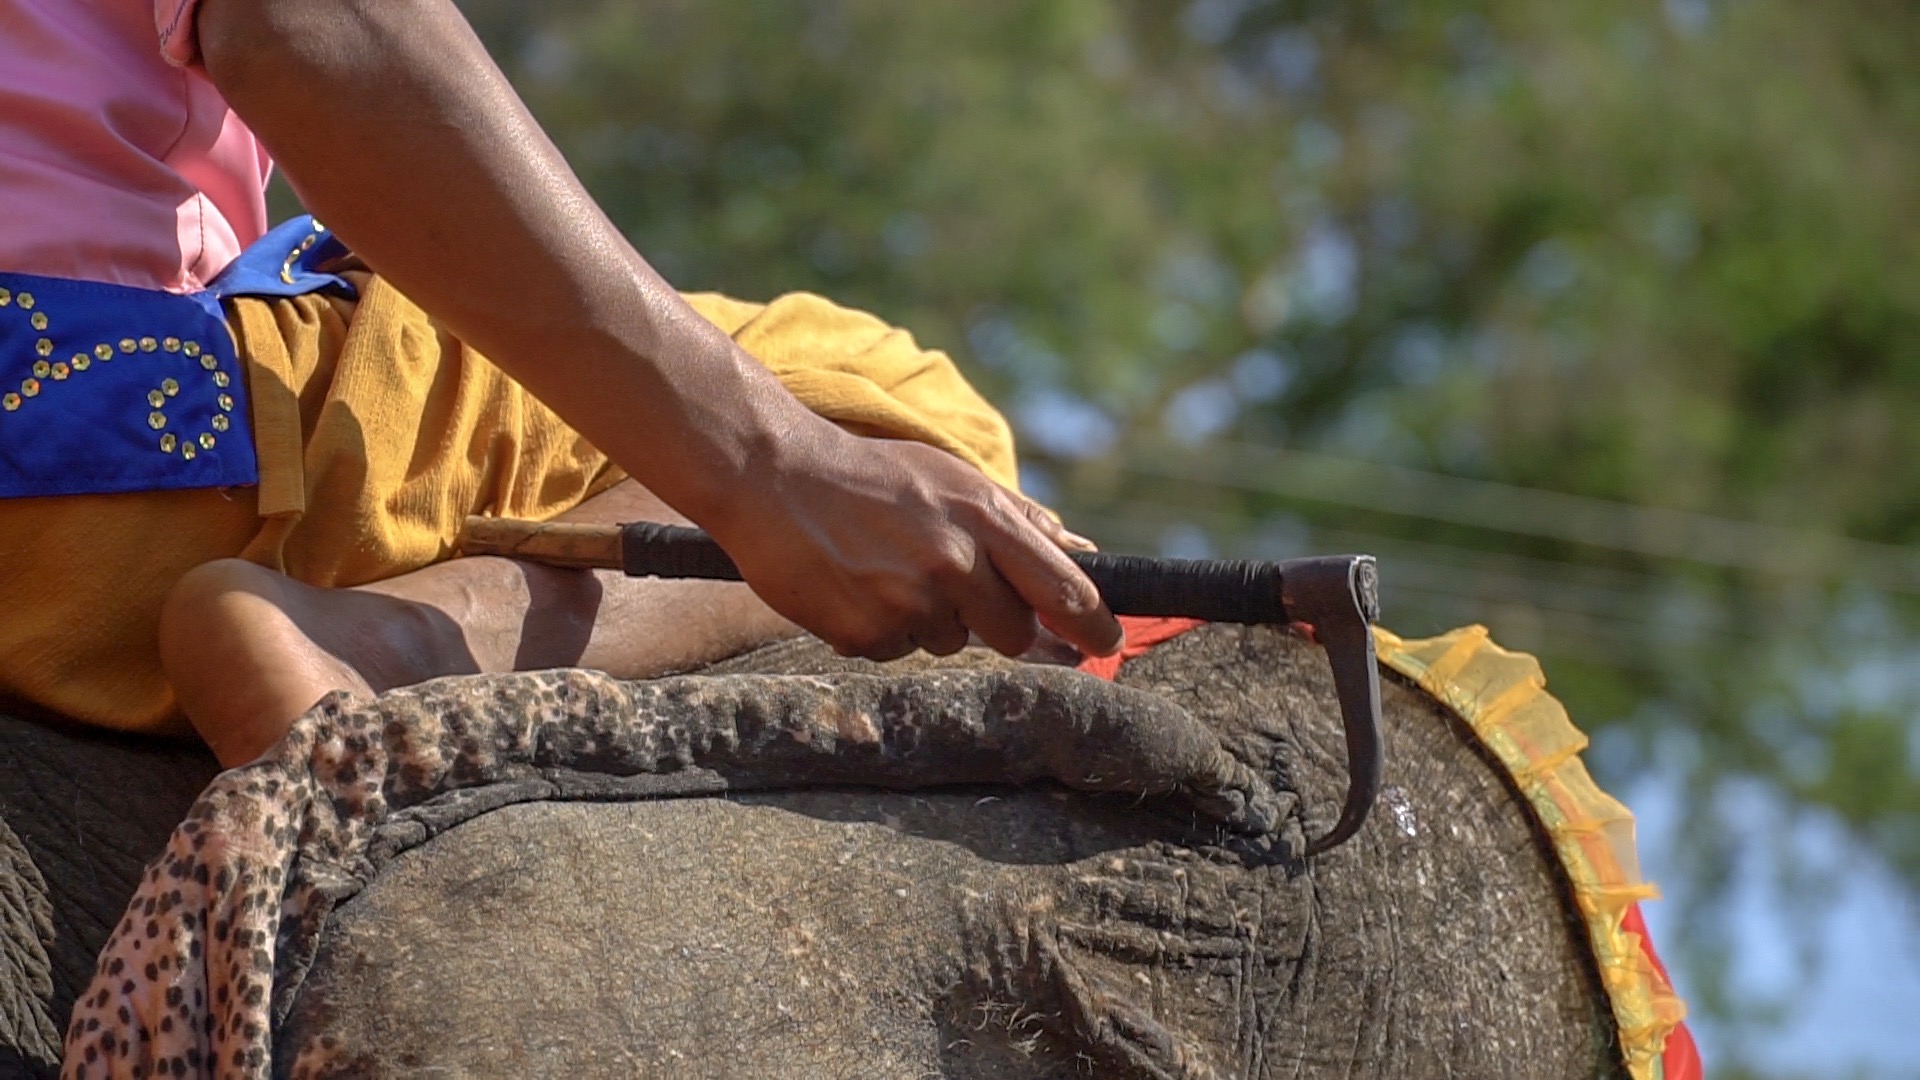 Elphant bullhook close up - Elephant Riding